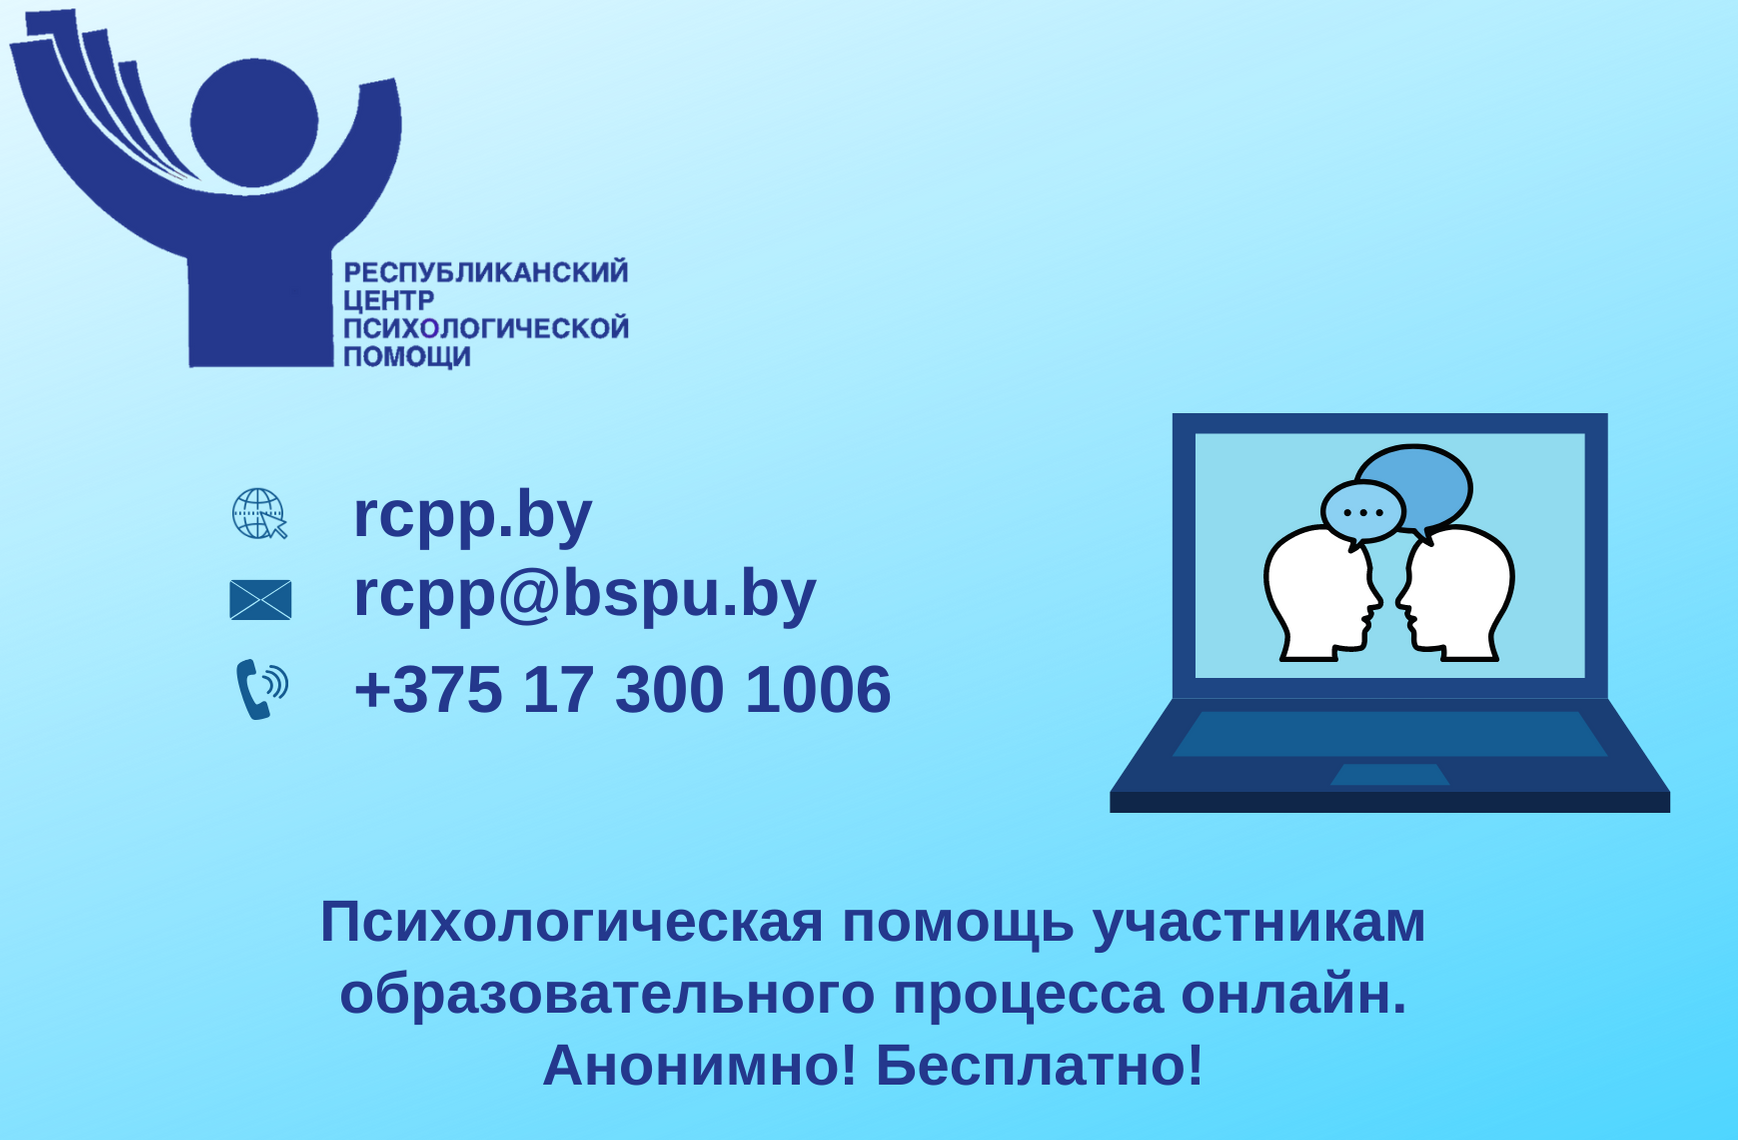 Психологическая помощь участникам образовательного процесса онлайн - rcpp.by